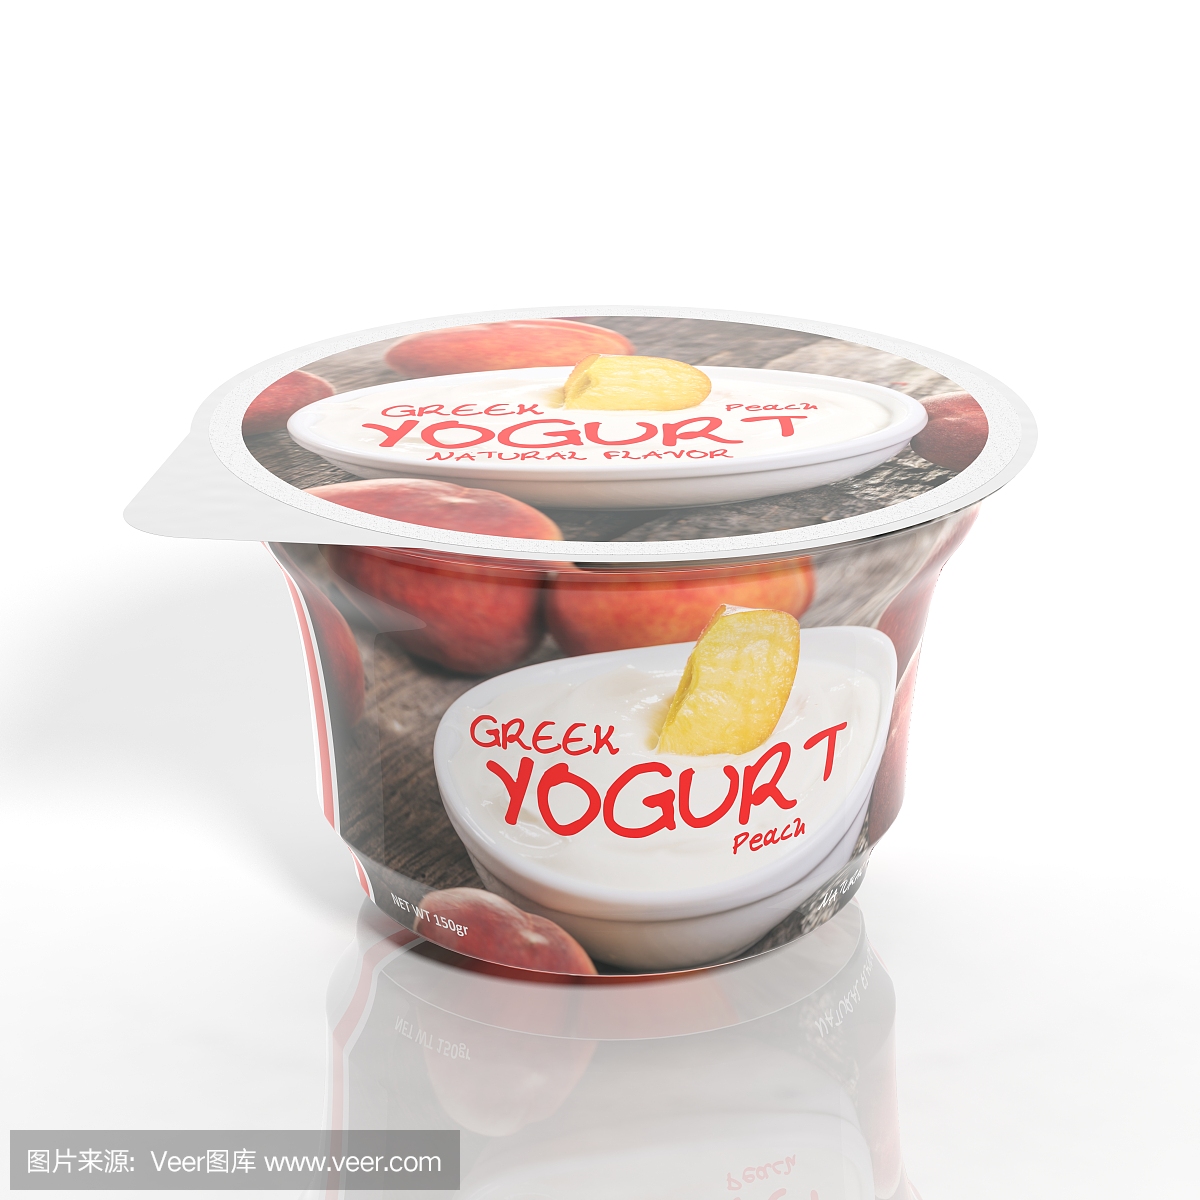 三维渲染的桃子酸奶塑料杯包装,孤立在白色的背景。